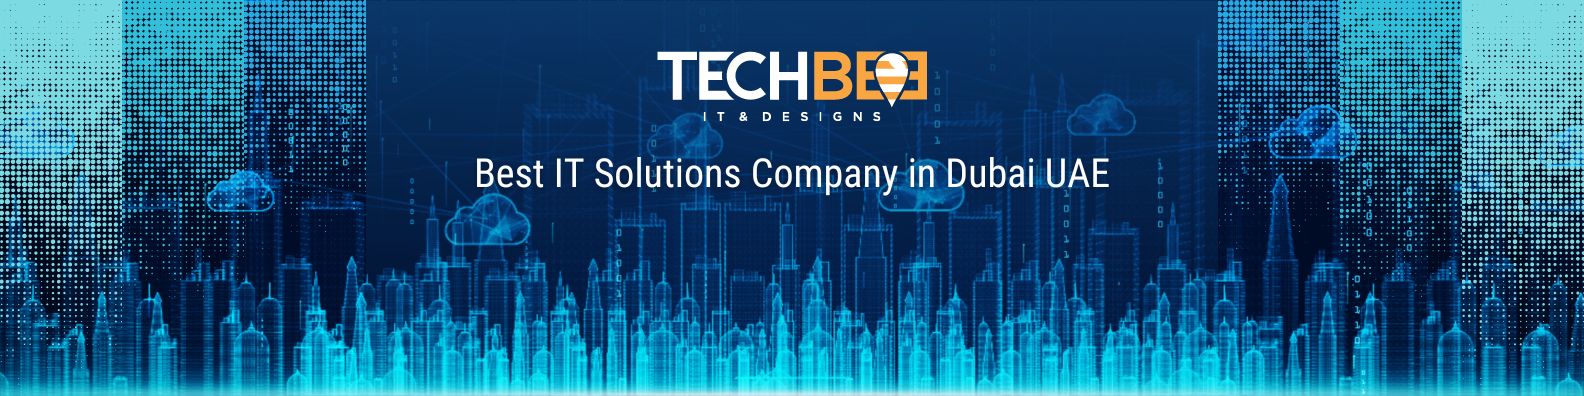 Best IT Solutions Company in Dubai UAE - Techbee